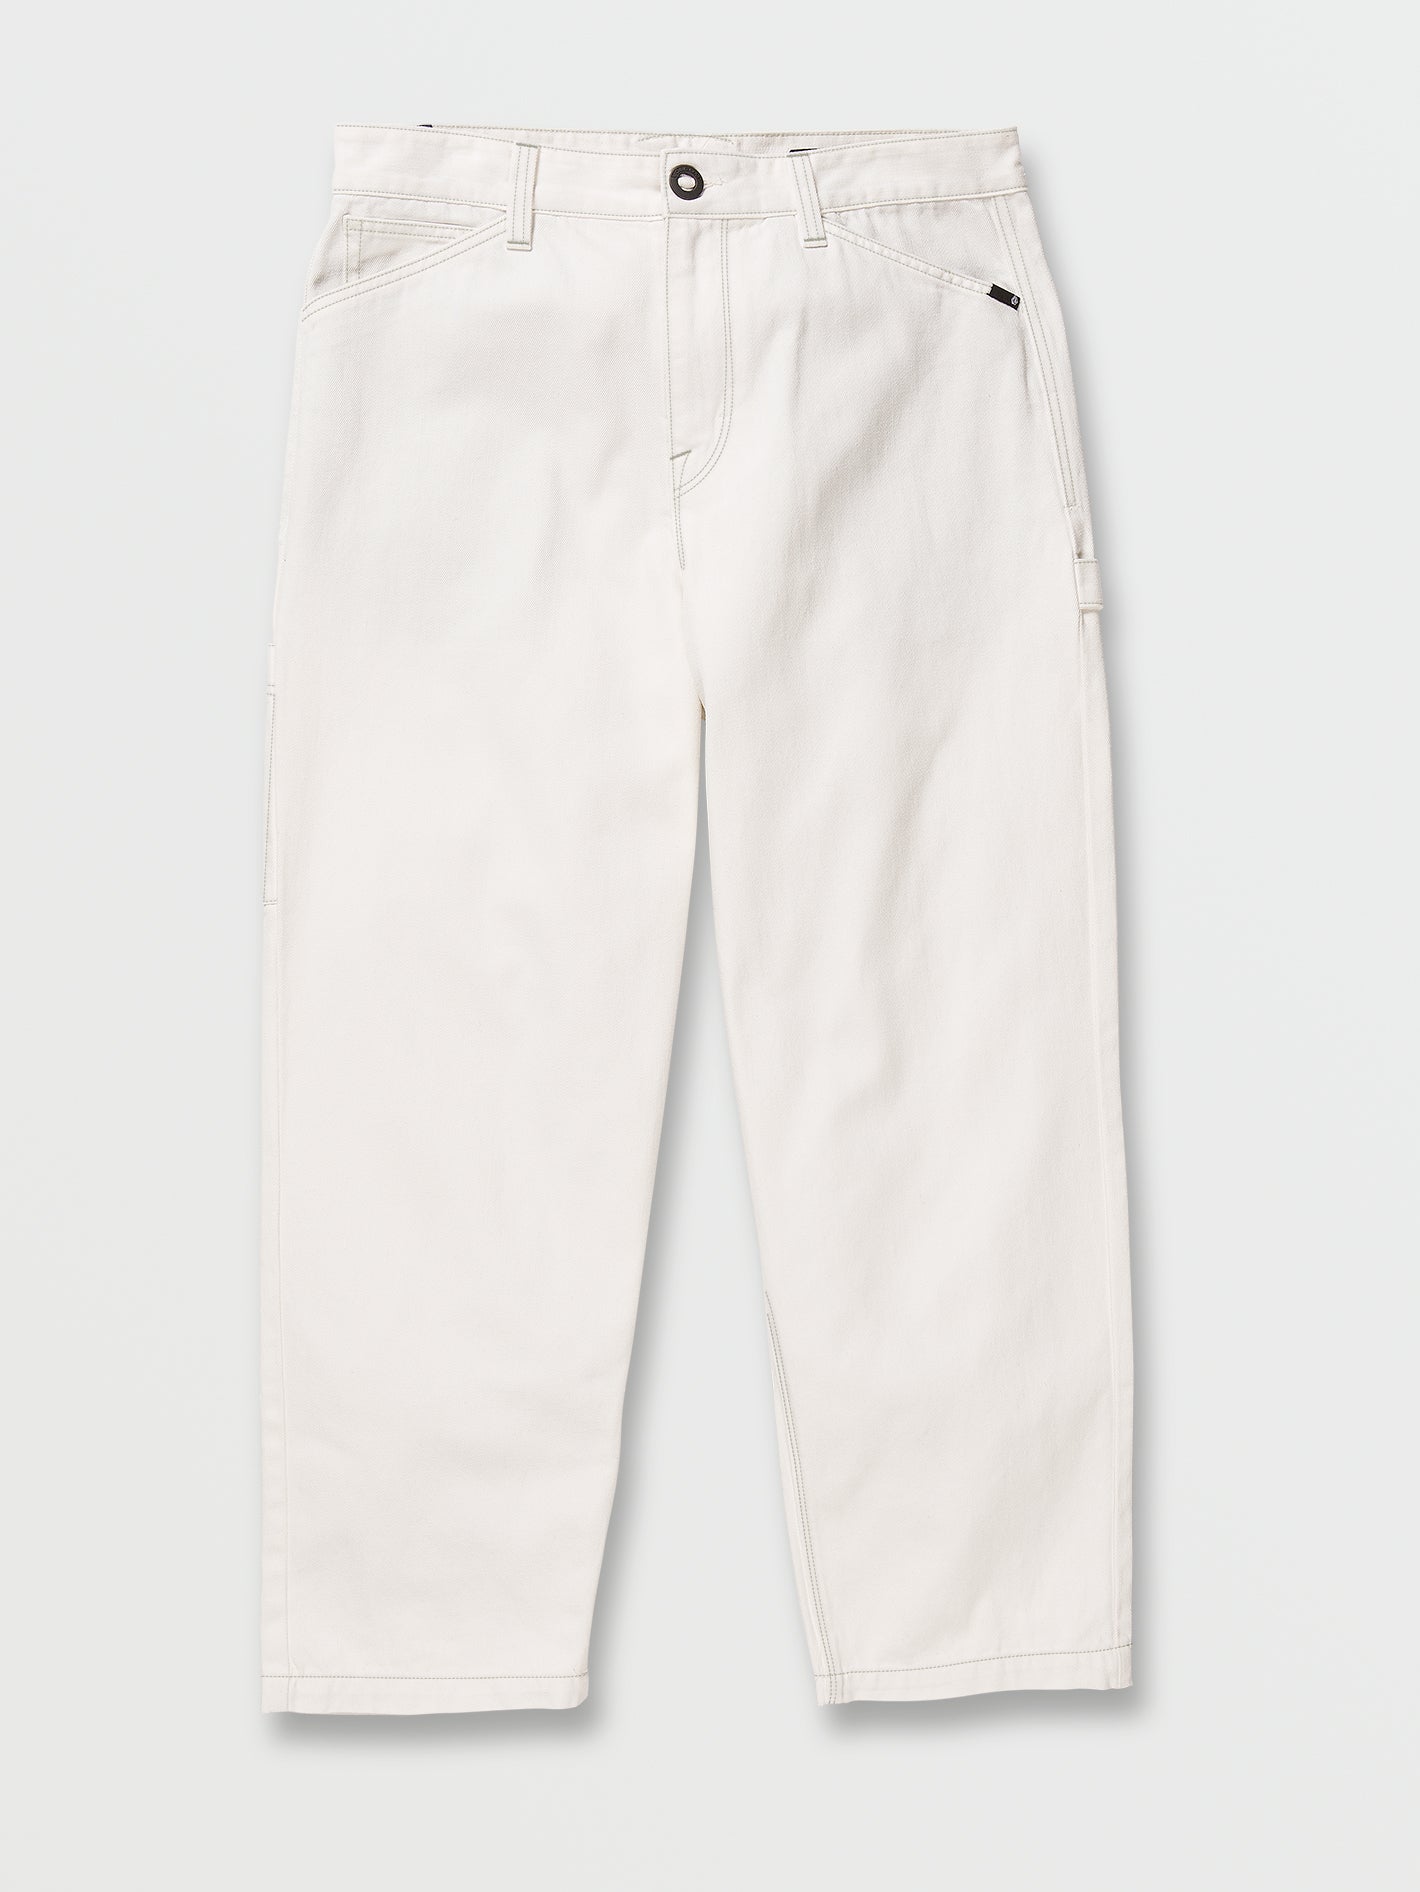 Kraftsman Pants - Whitecap Grey – Volcom US